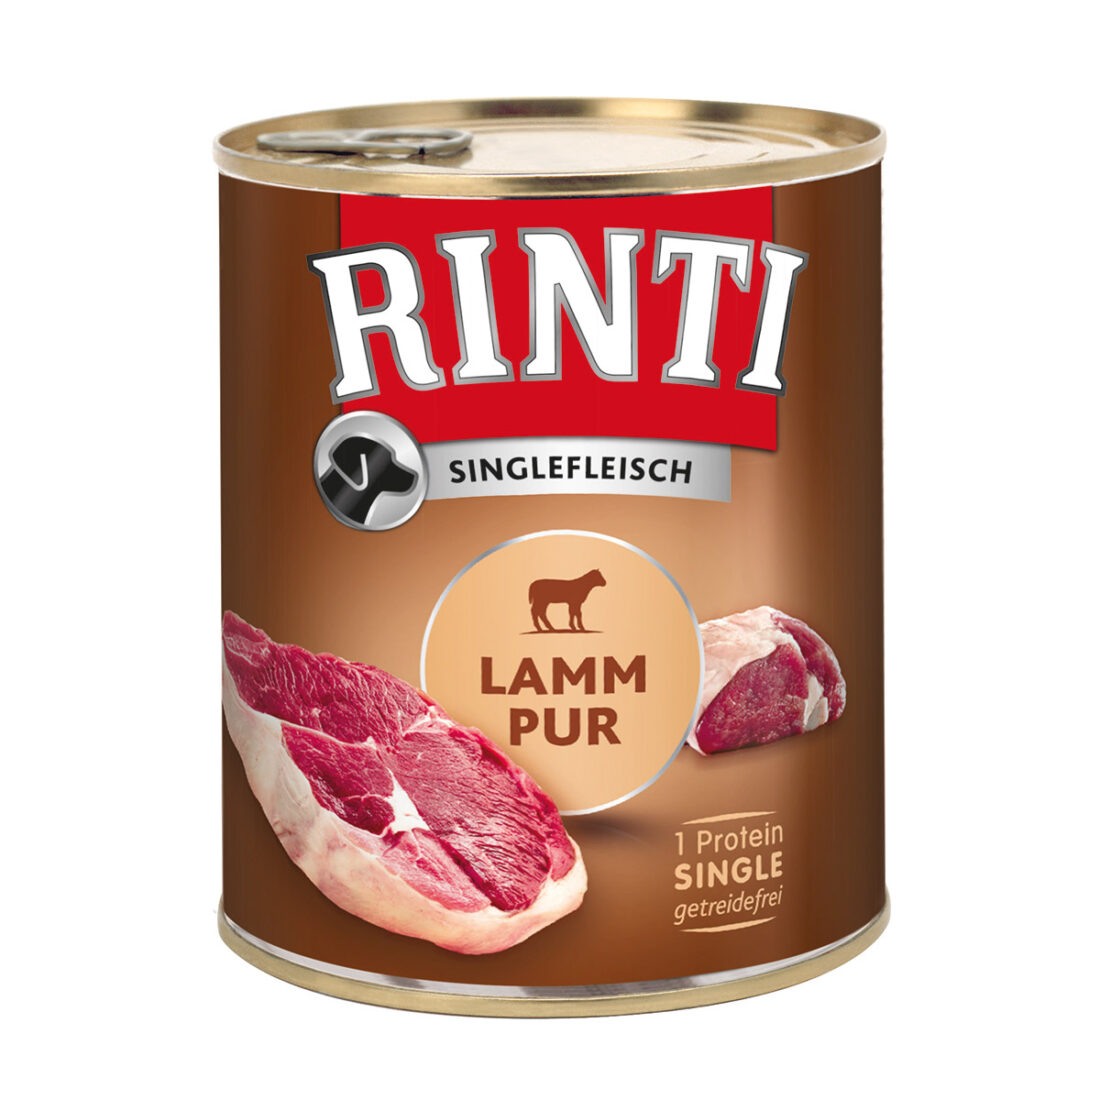 RINTI Singlefleisch čisté jehněčí maso 6